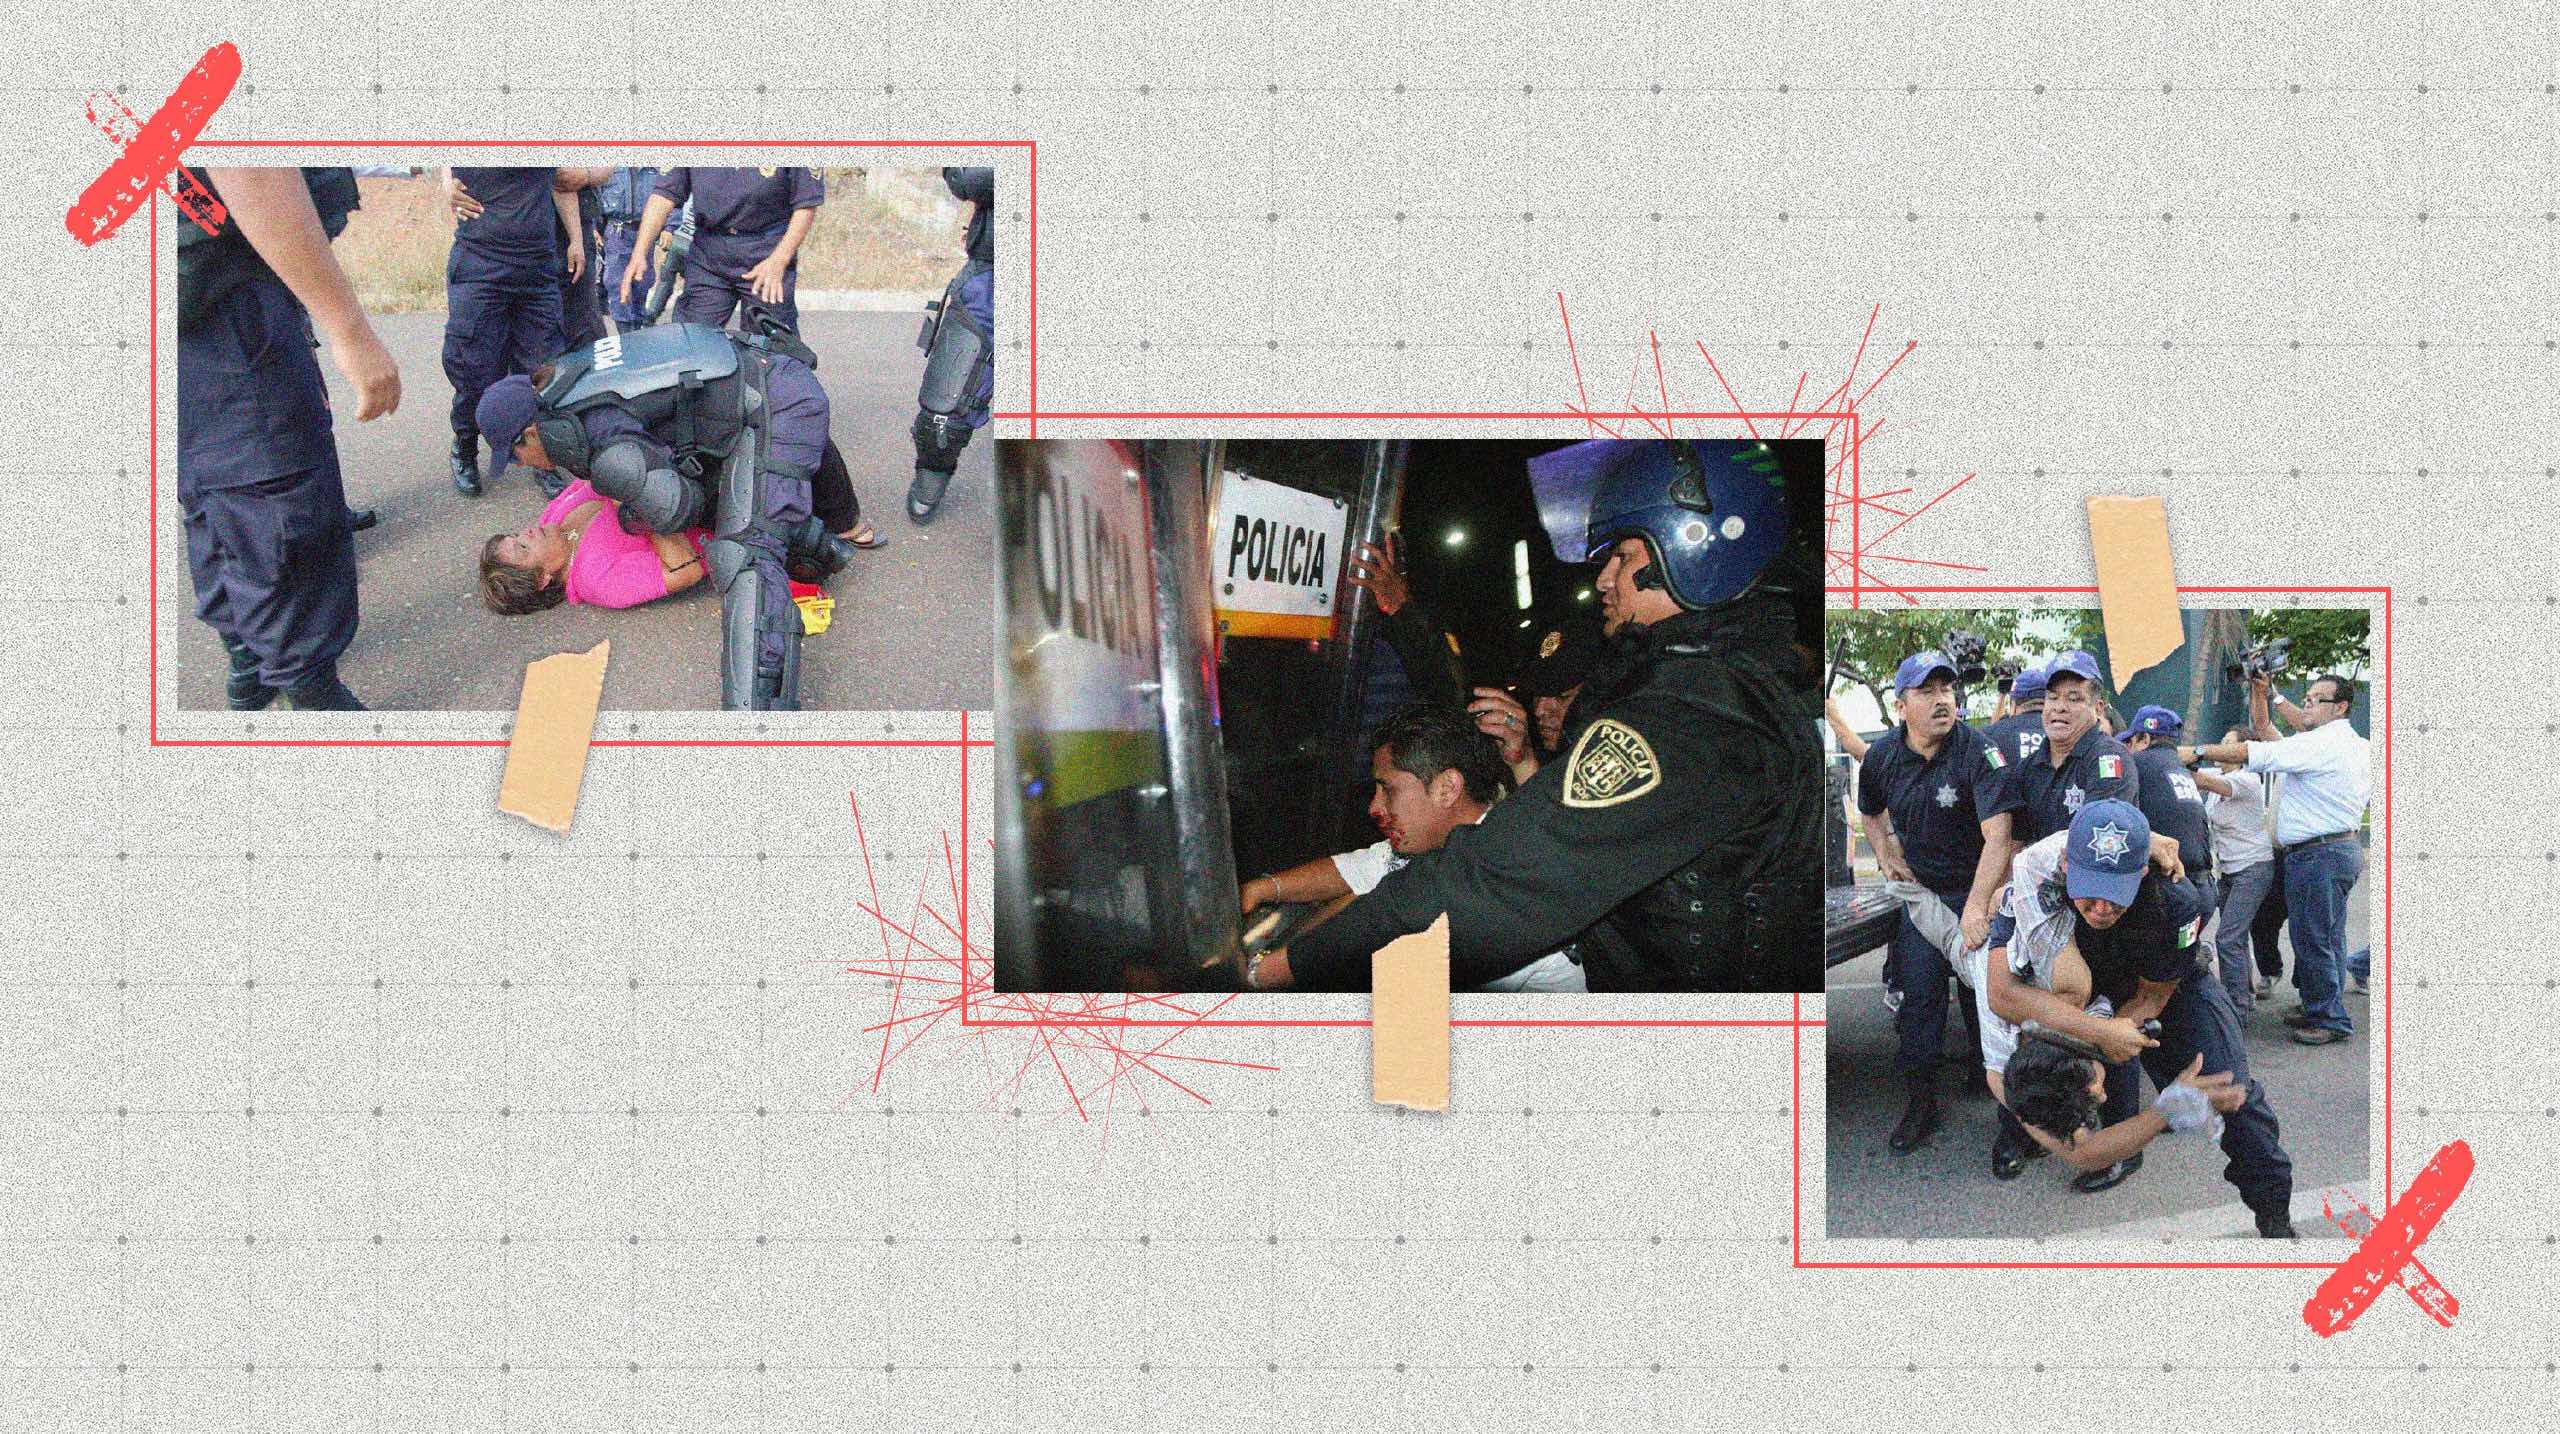 Brutalidad policial en México, fenómeno de impunidad sin límite